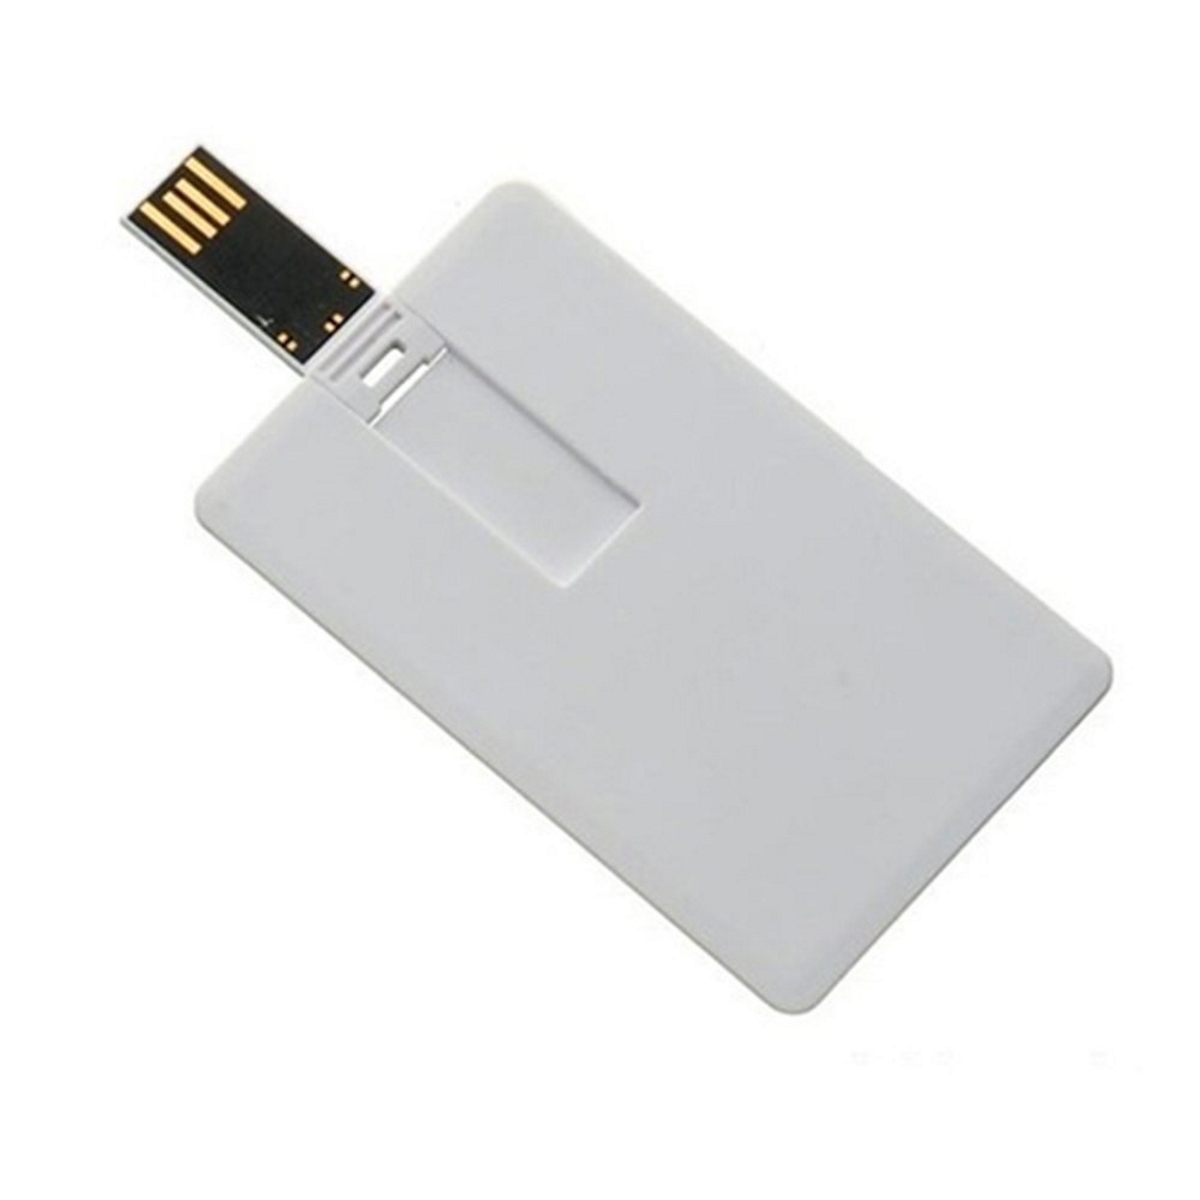 GB) GERMANY Kreditkarte ® 2 USB (Weiss, USB-Stick